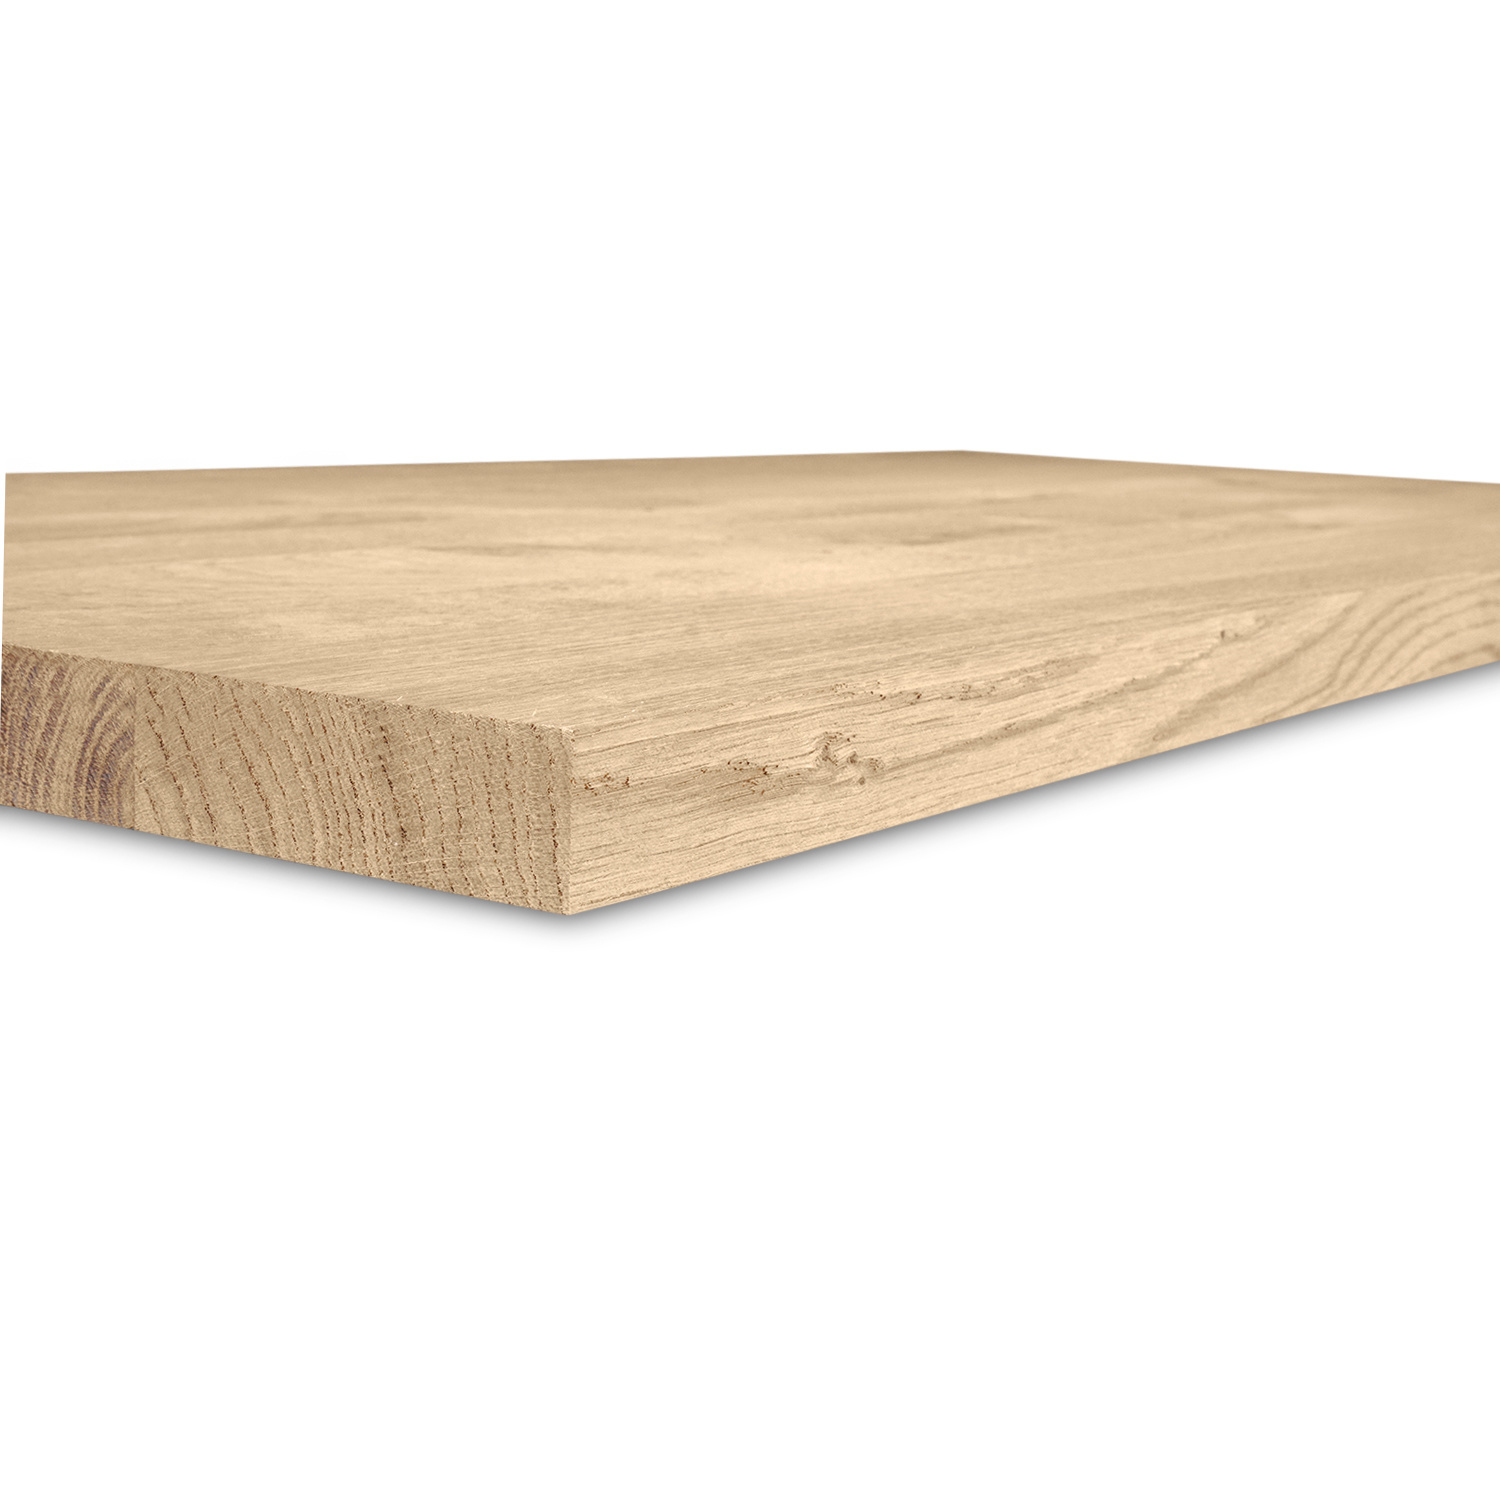  Tischplatte Eiche nach Maß - 2,7 cm dick (1-Schicht) - Breite Lamellen (10 - 12 cm breit) - Eichenholz rustikal - verleimt & künstlich getrocknet (HF 8-12%) - 50-120x50-248 cm